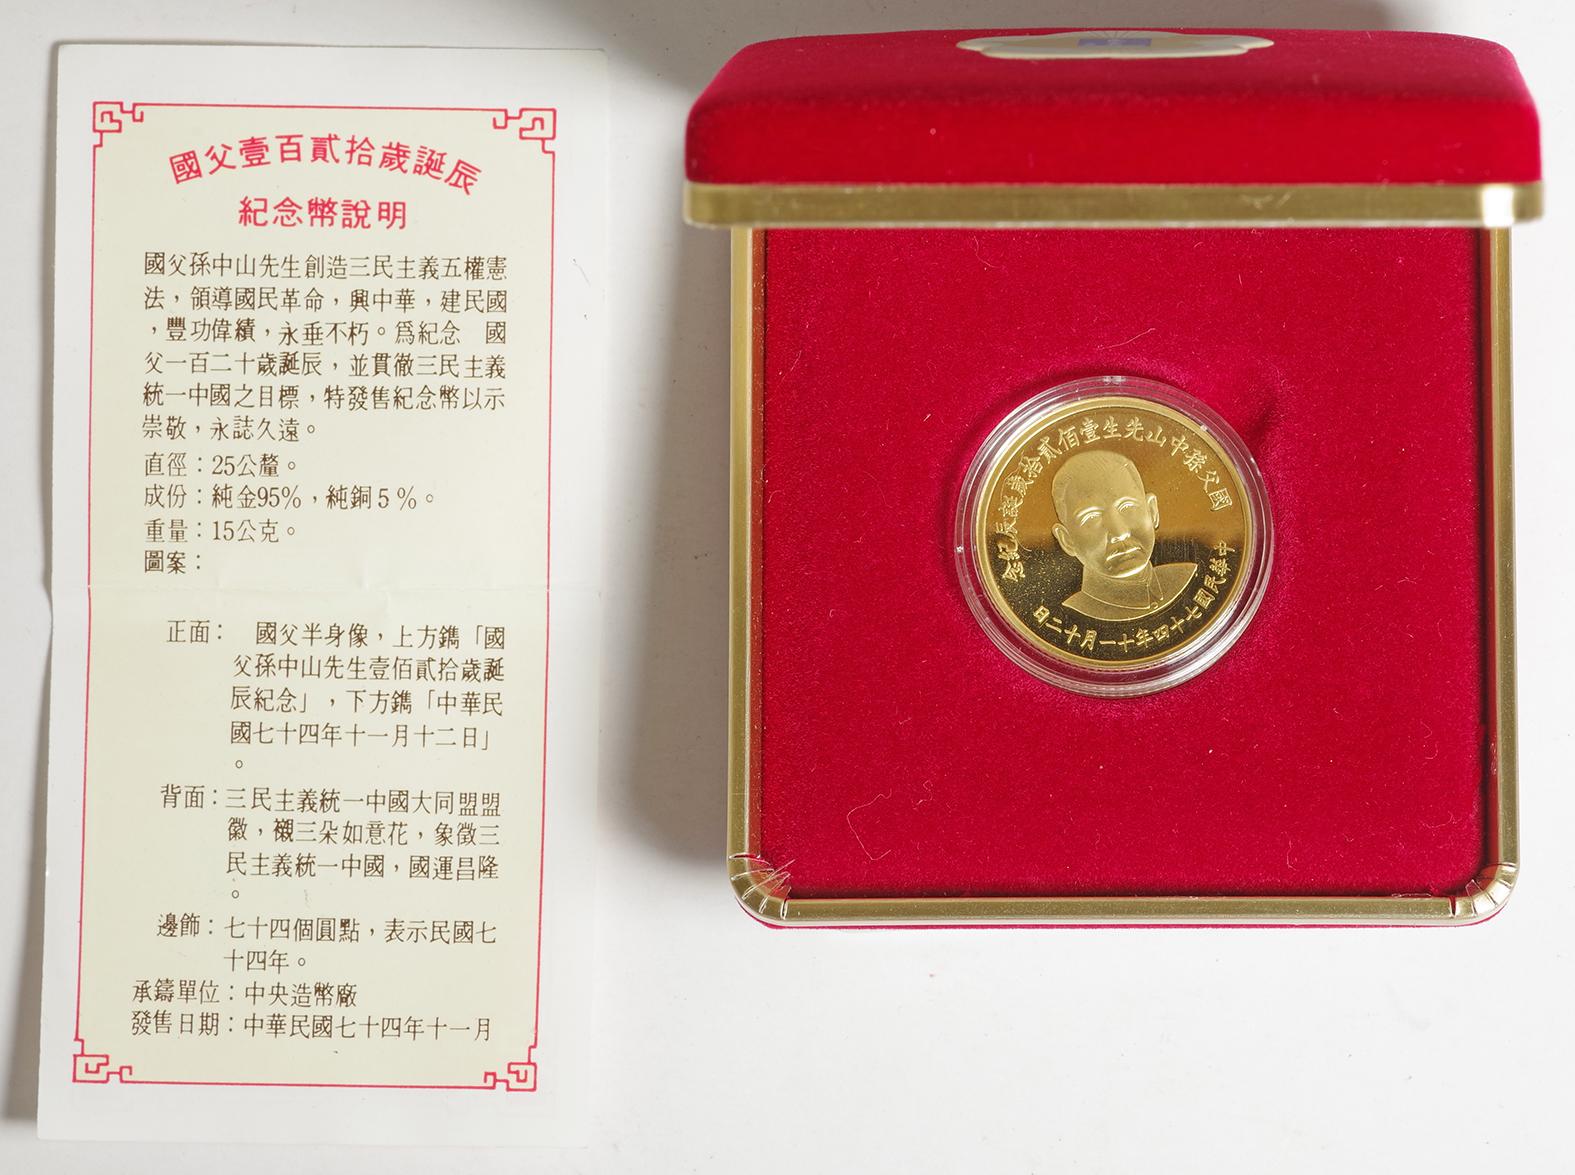 中華民国 孫文生誕120年記念 金メダル 年号なし(民国74年) | Taisei ...